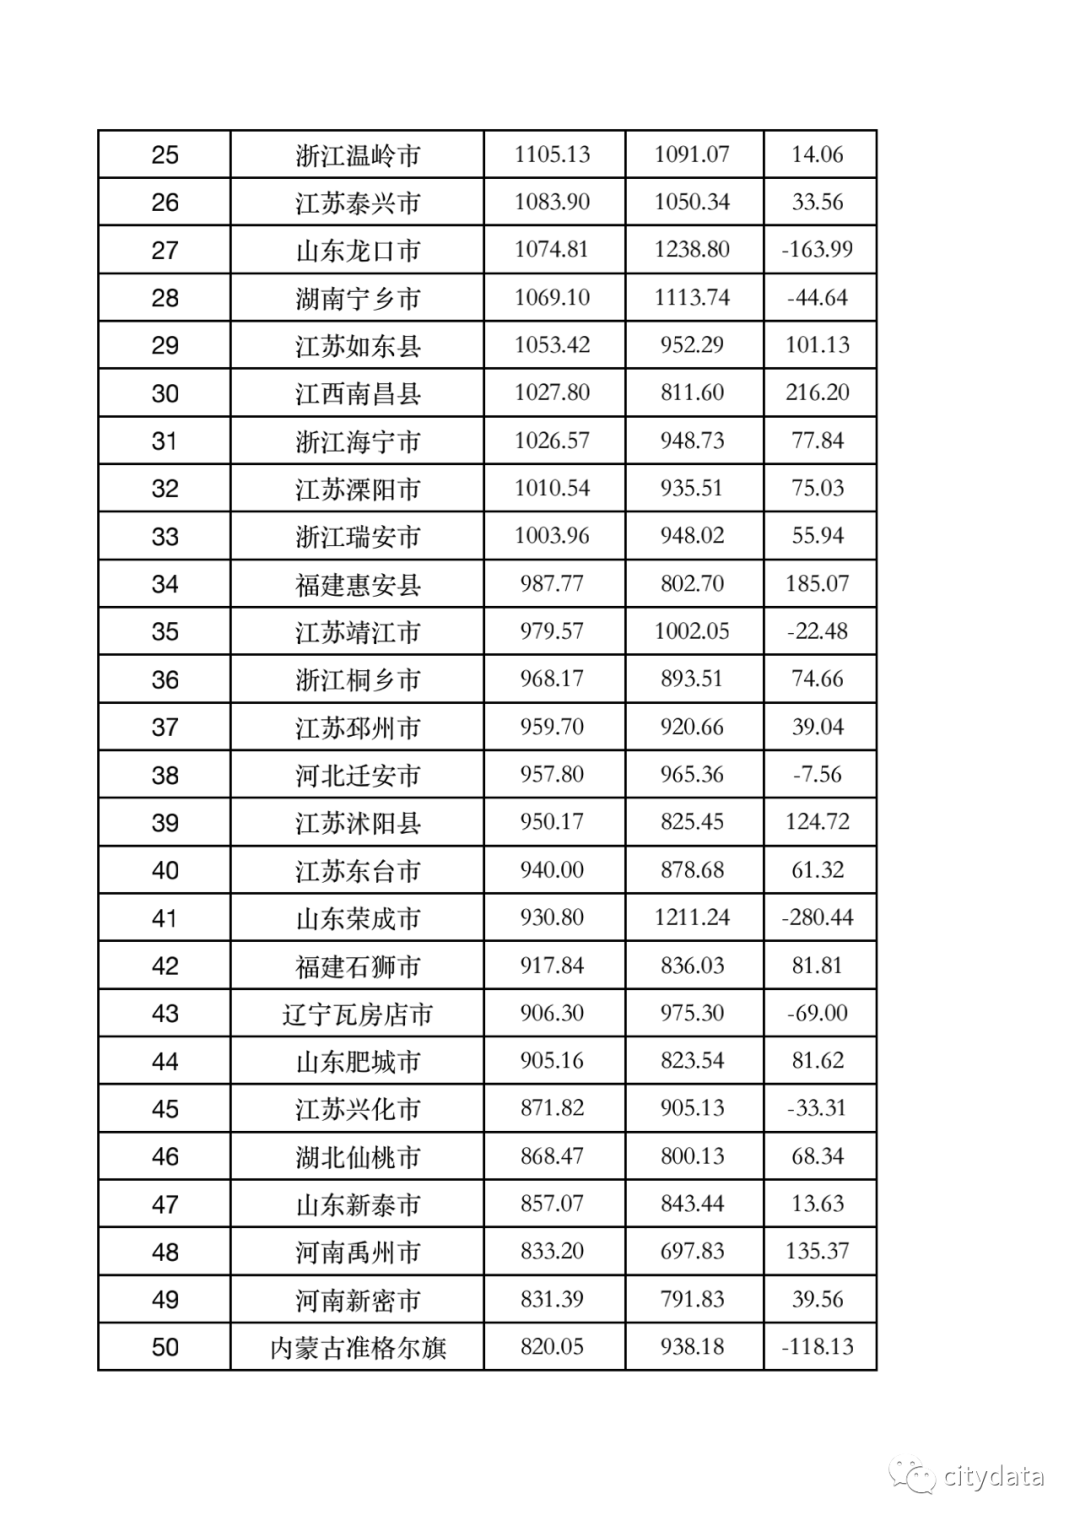 2019年gdp排行榜_2019年黑龙江省地级市人均GDP排名大庆市超9万居第一